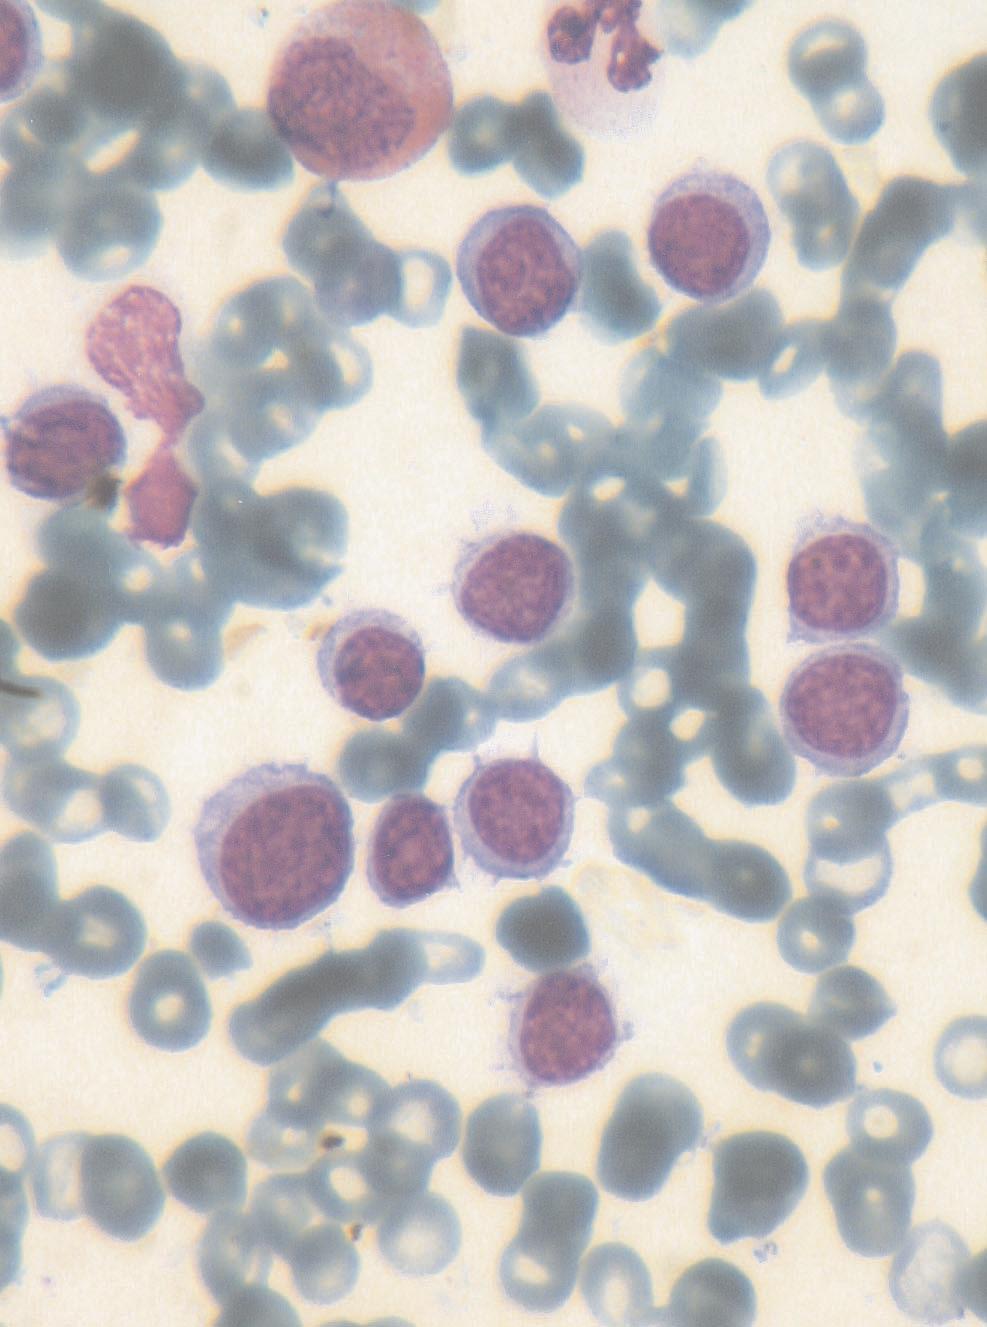 Resim 1. Kemik iliği aspirasyonu: Santral nükleuslu, belirgin stoplazmik projeksiyonlu lenfoid hücreler (Giemsa X100). kliniko-patolojik antite olarak değerlendirilmiştir (6).